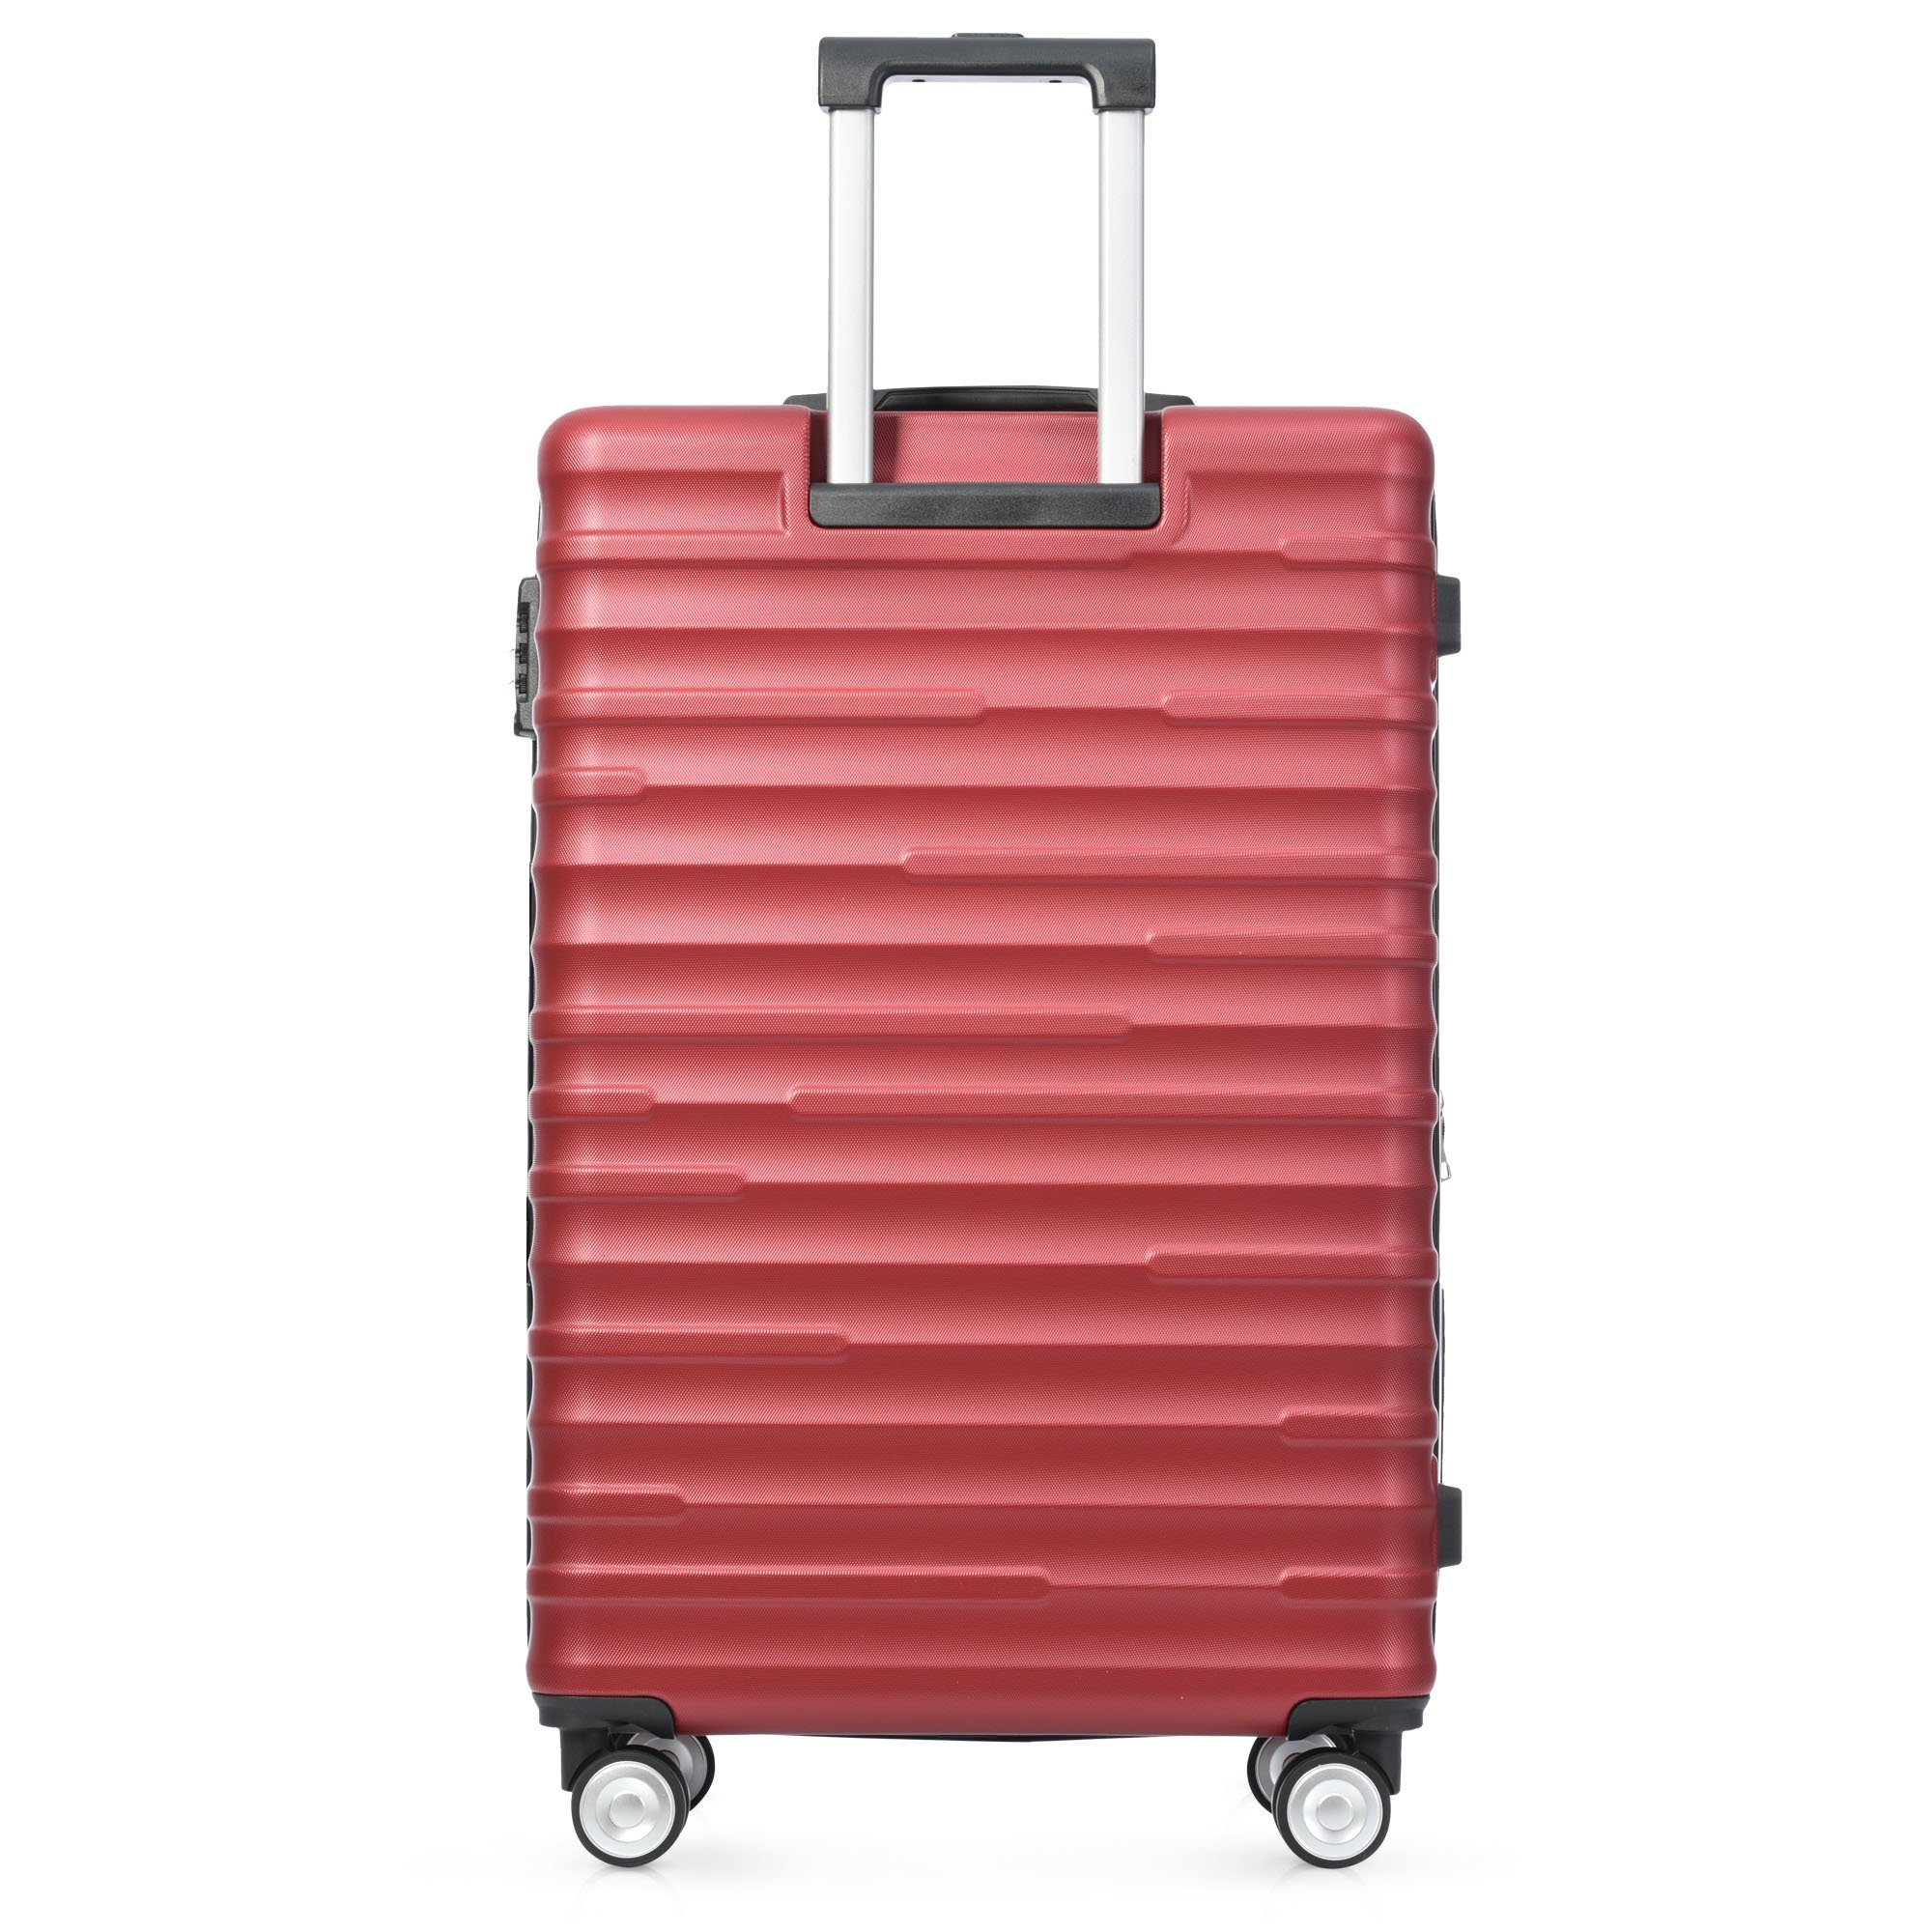 Räder, zuverlässiger ABS-Gepäck, Handgepäckkoffer Design, REDOM 4 Rot Hochwertiges Reisebegleiter, stilvoll TSA-Schloss, asserdichtes